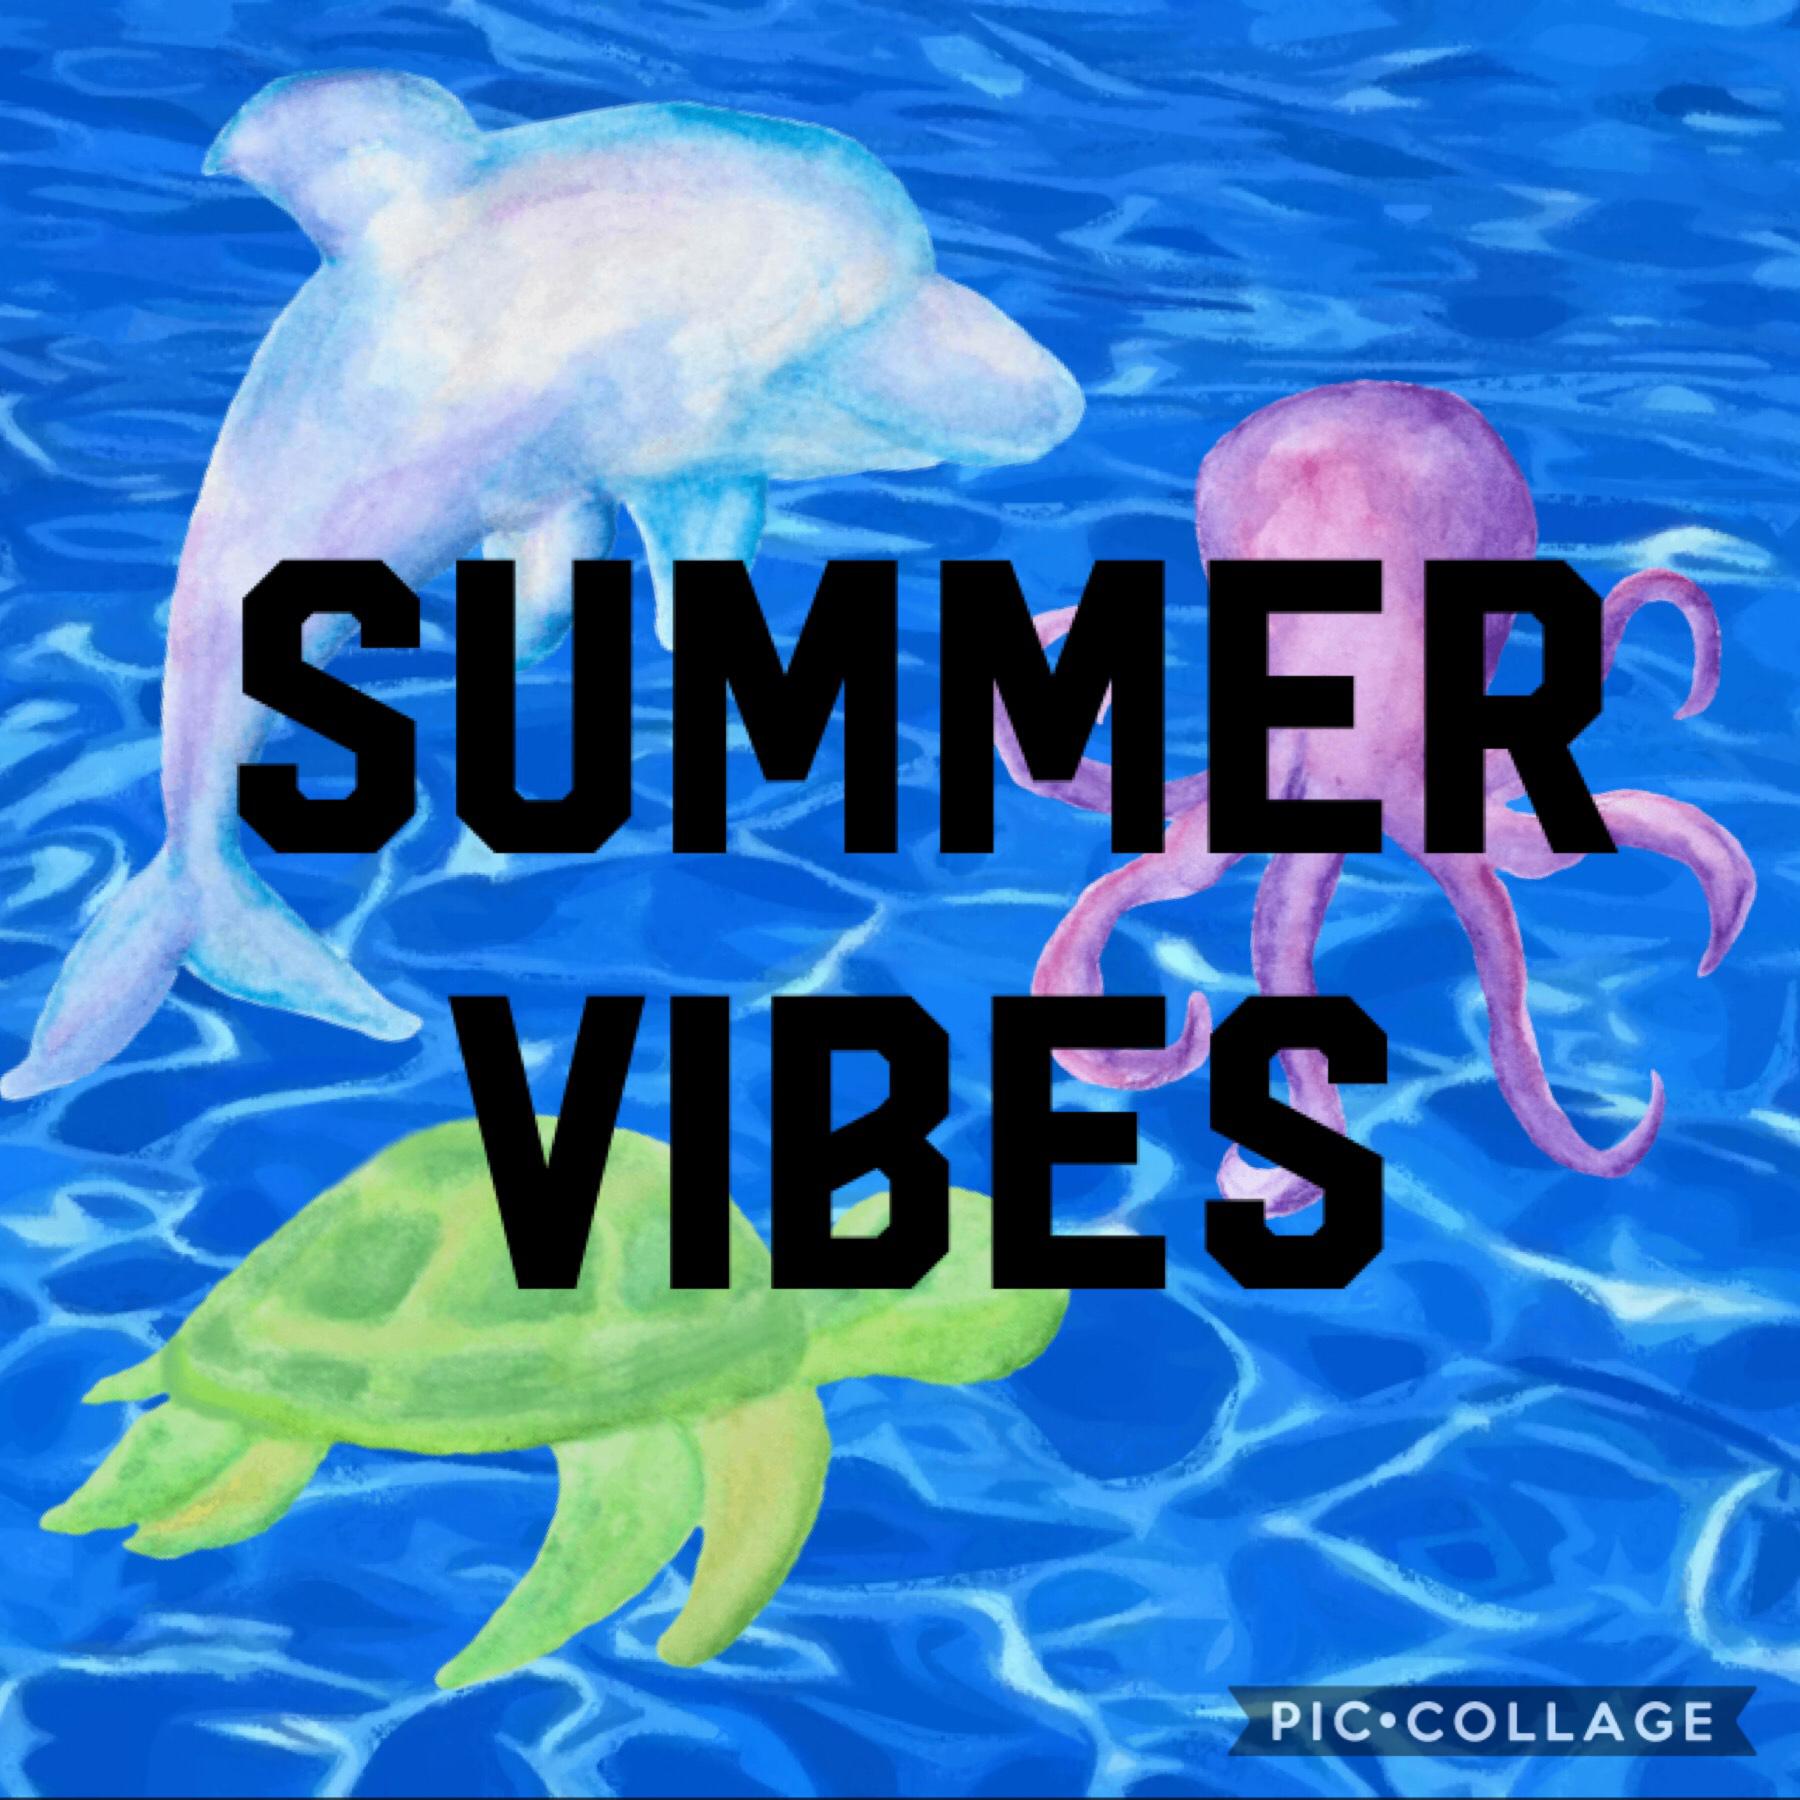 Happy summer everyone!